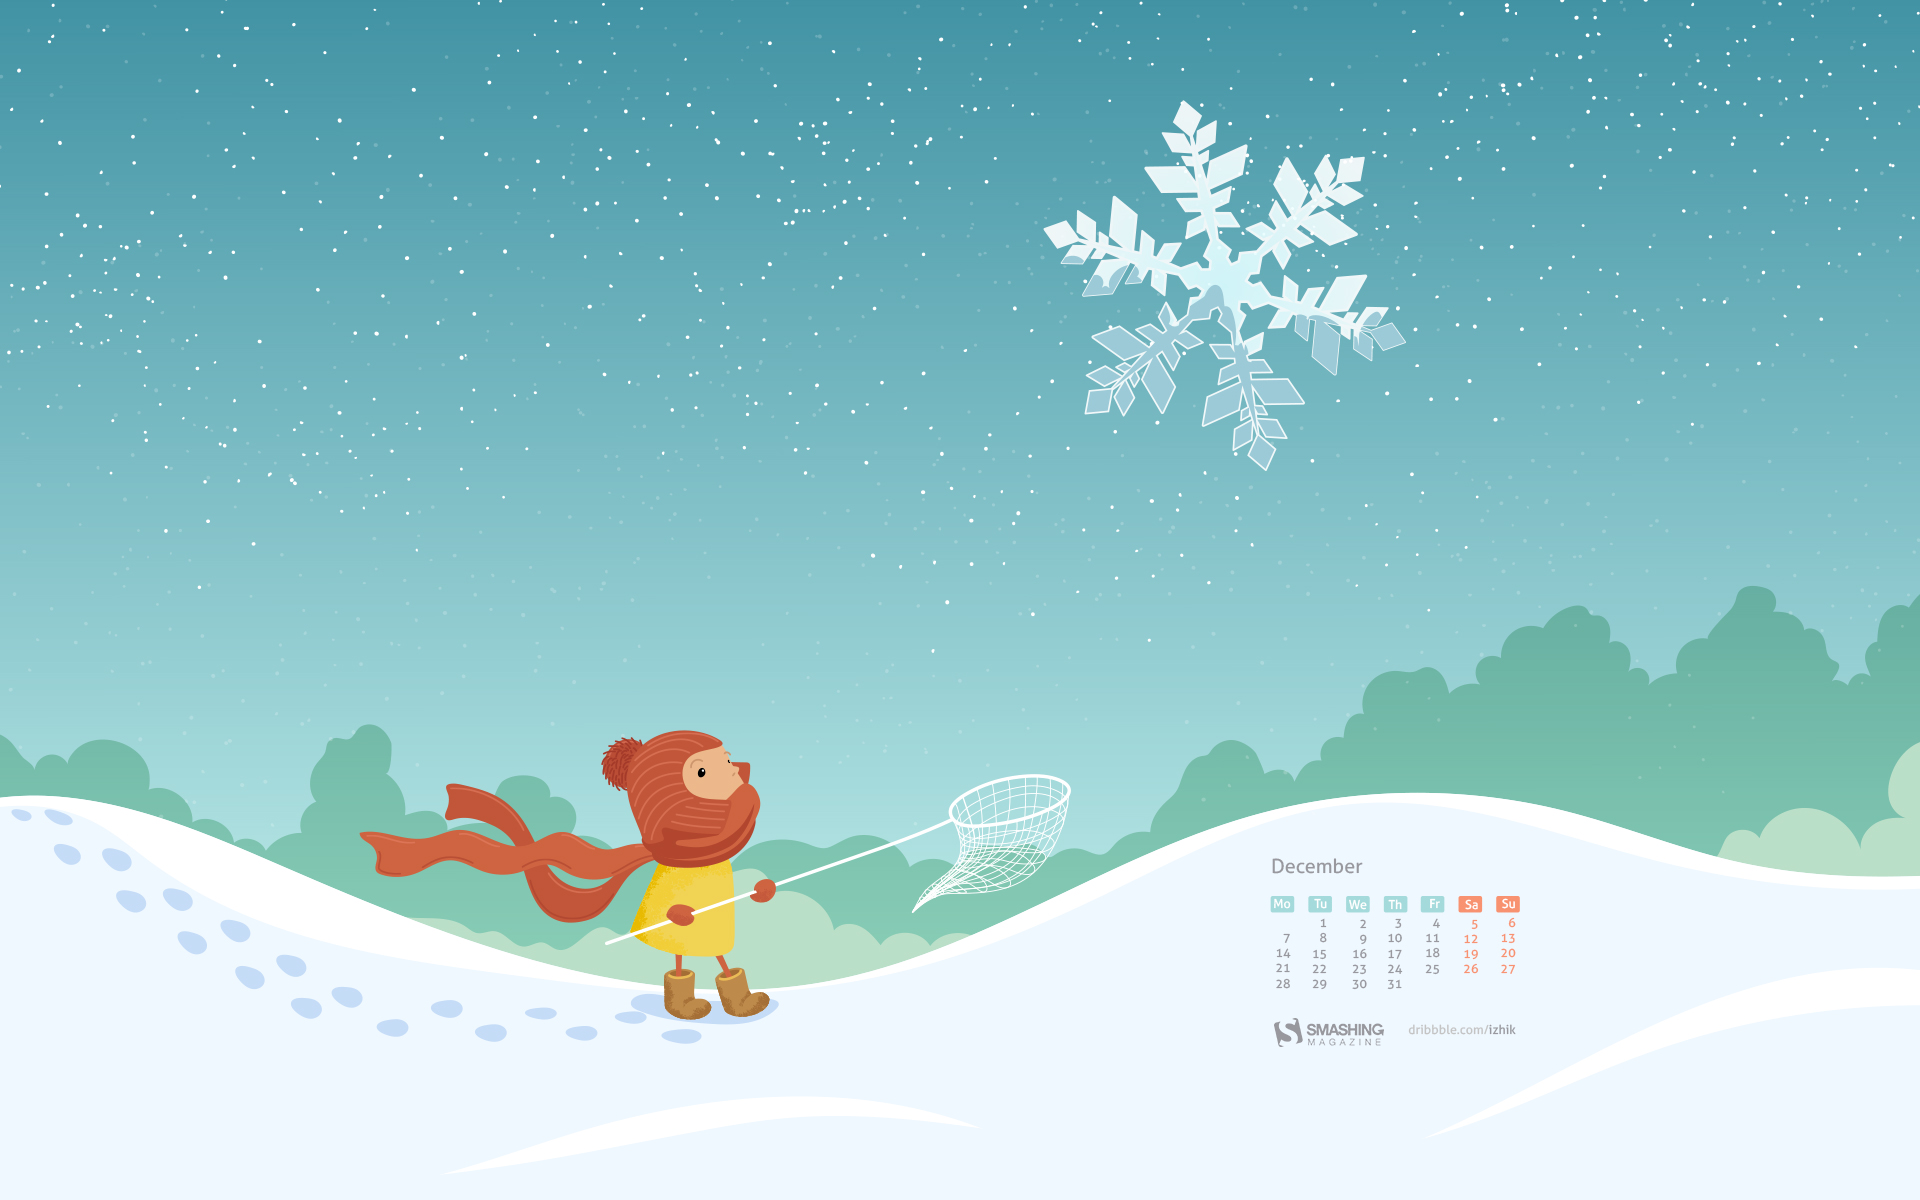 december calendar wallpaper,snow,illustration,sky,cartoon,winter